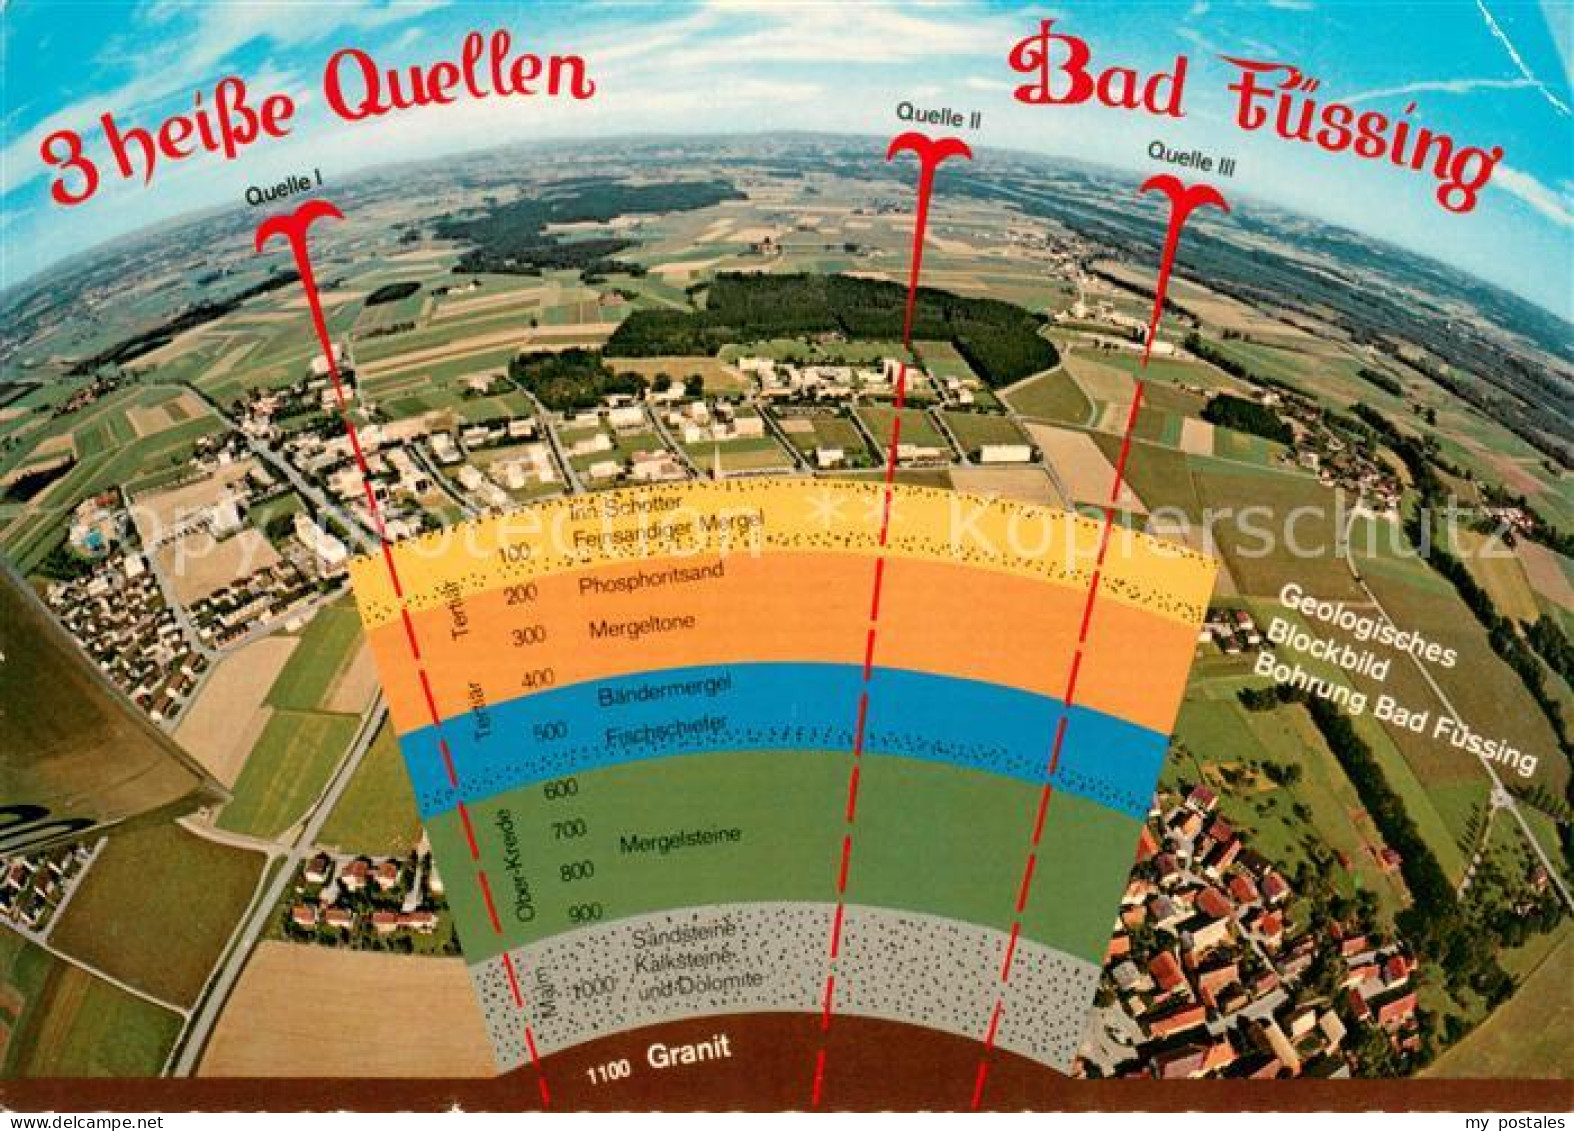 73648305 Bad Fuessing Geolog Blockbild Von 3 Bohrungen 3 Heisse Quellen Fliegera - Bad Fuessing